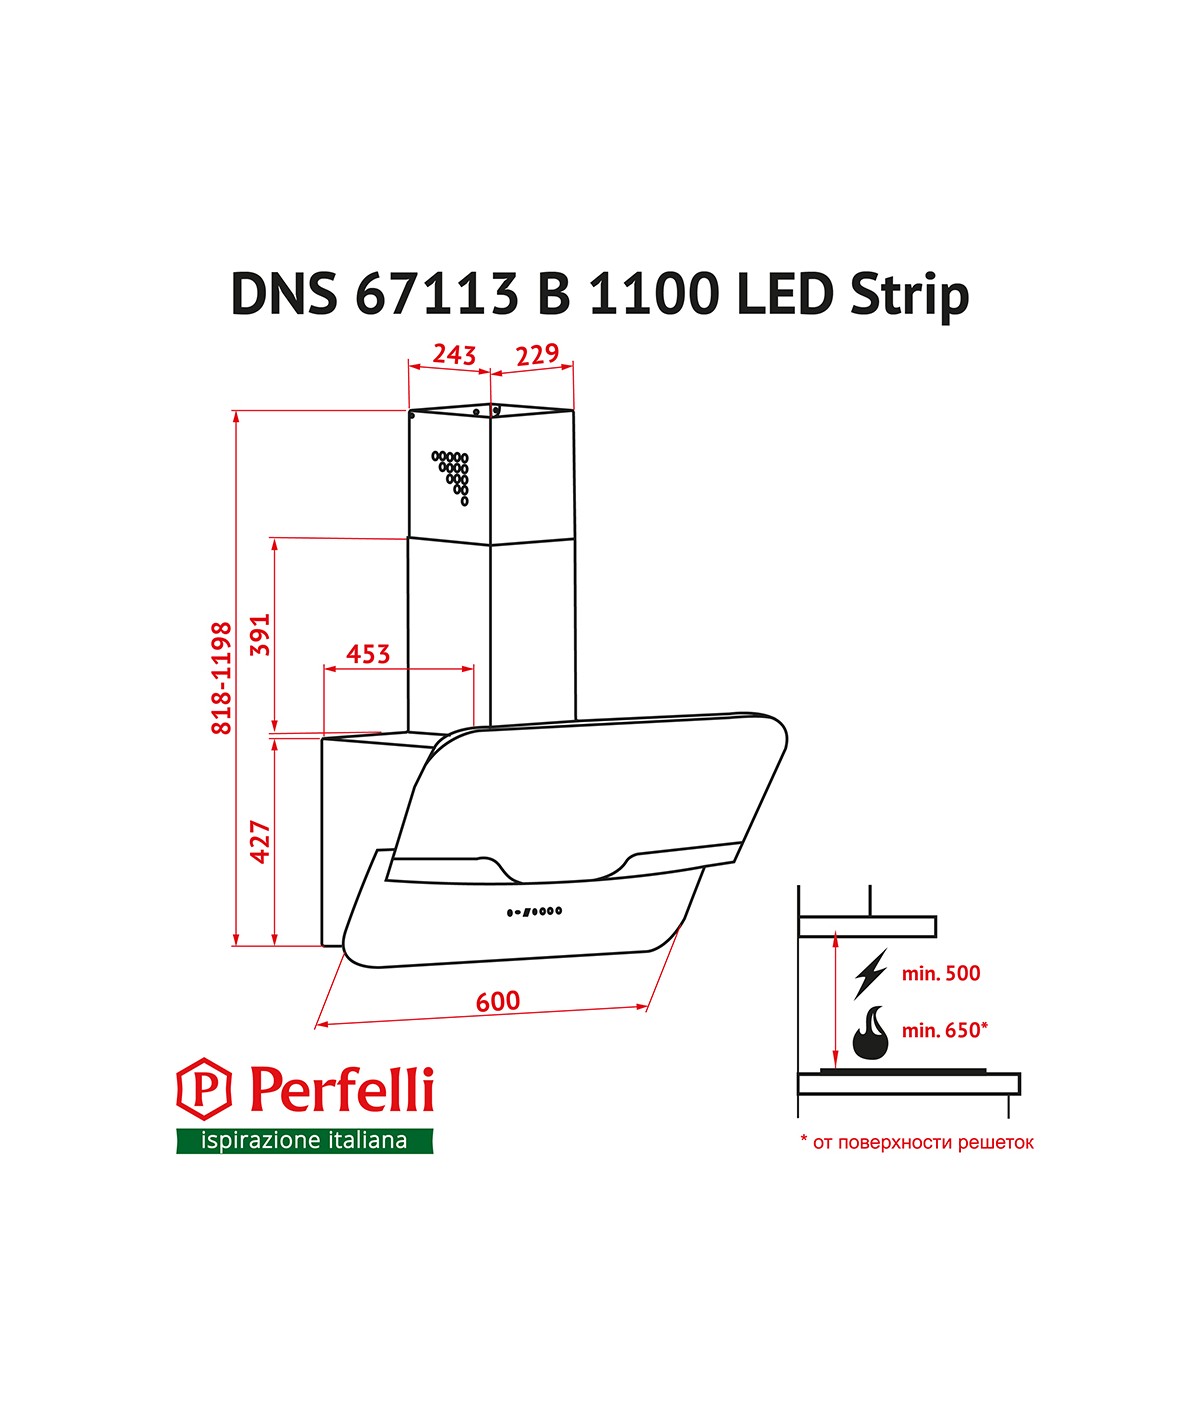 Perfelli DNS 67113 B 1100 BL LED Strip Габаритные размеры